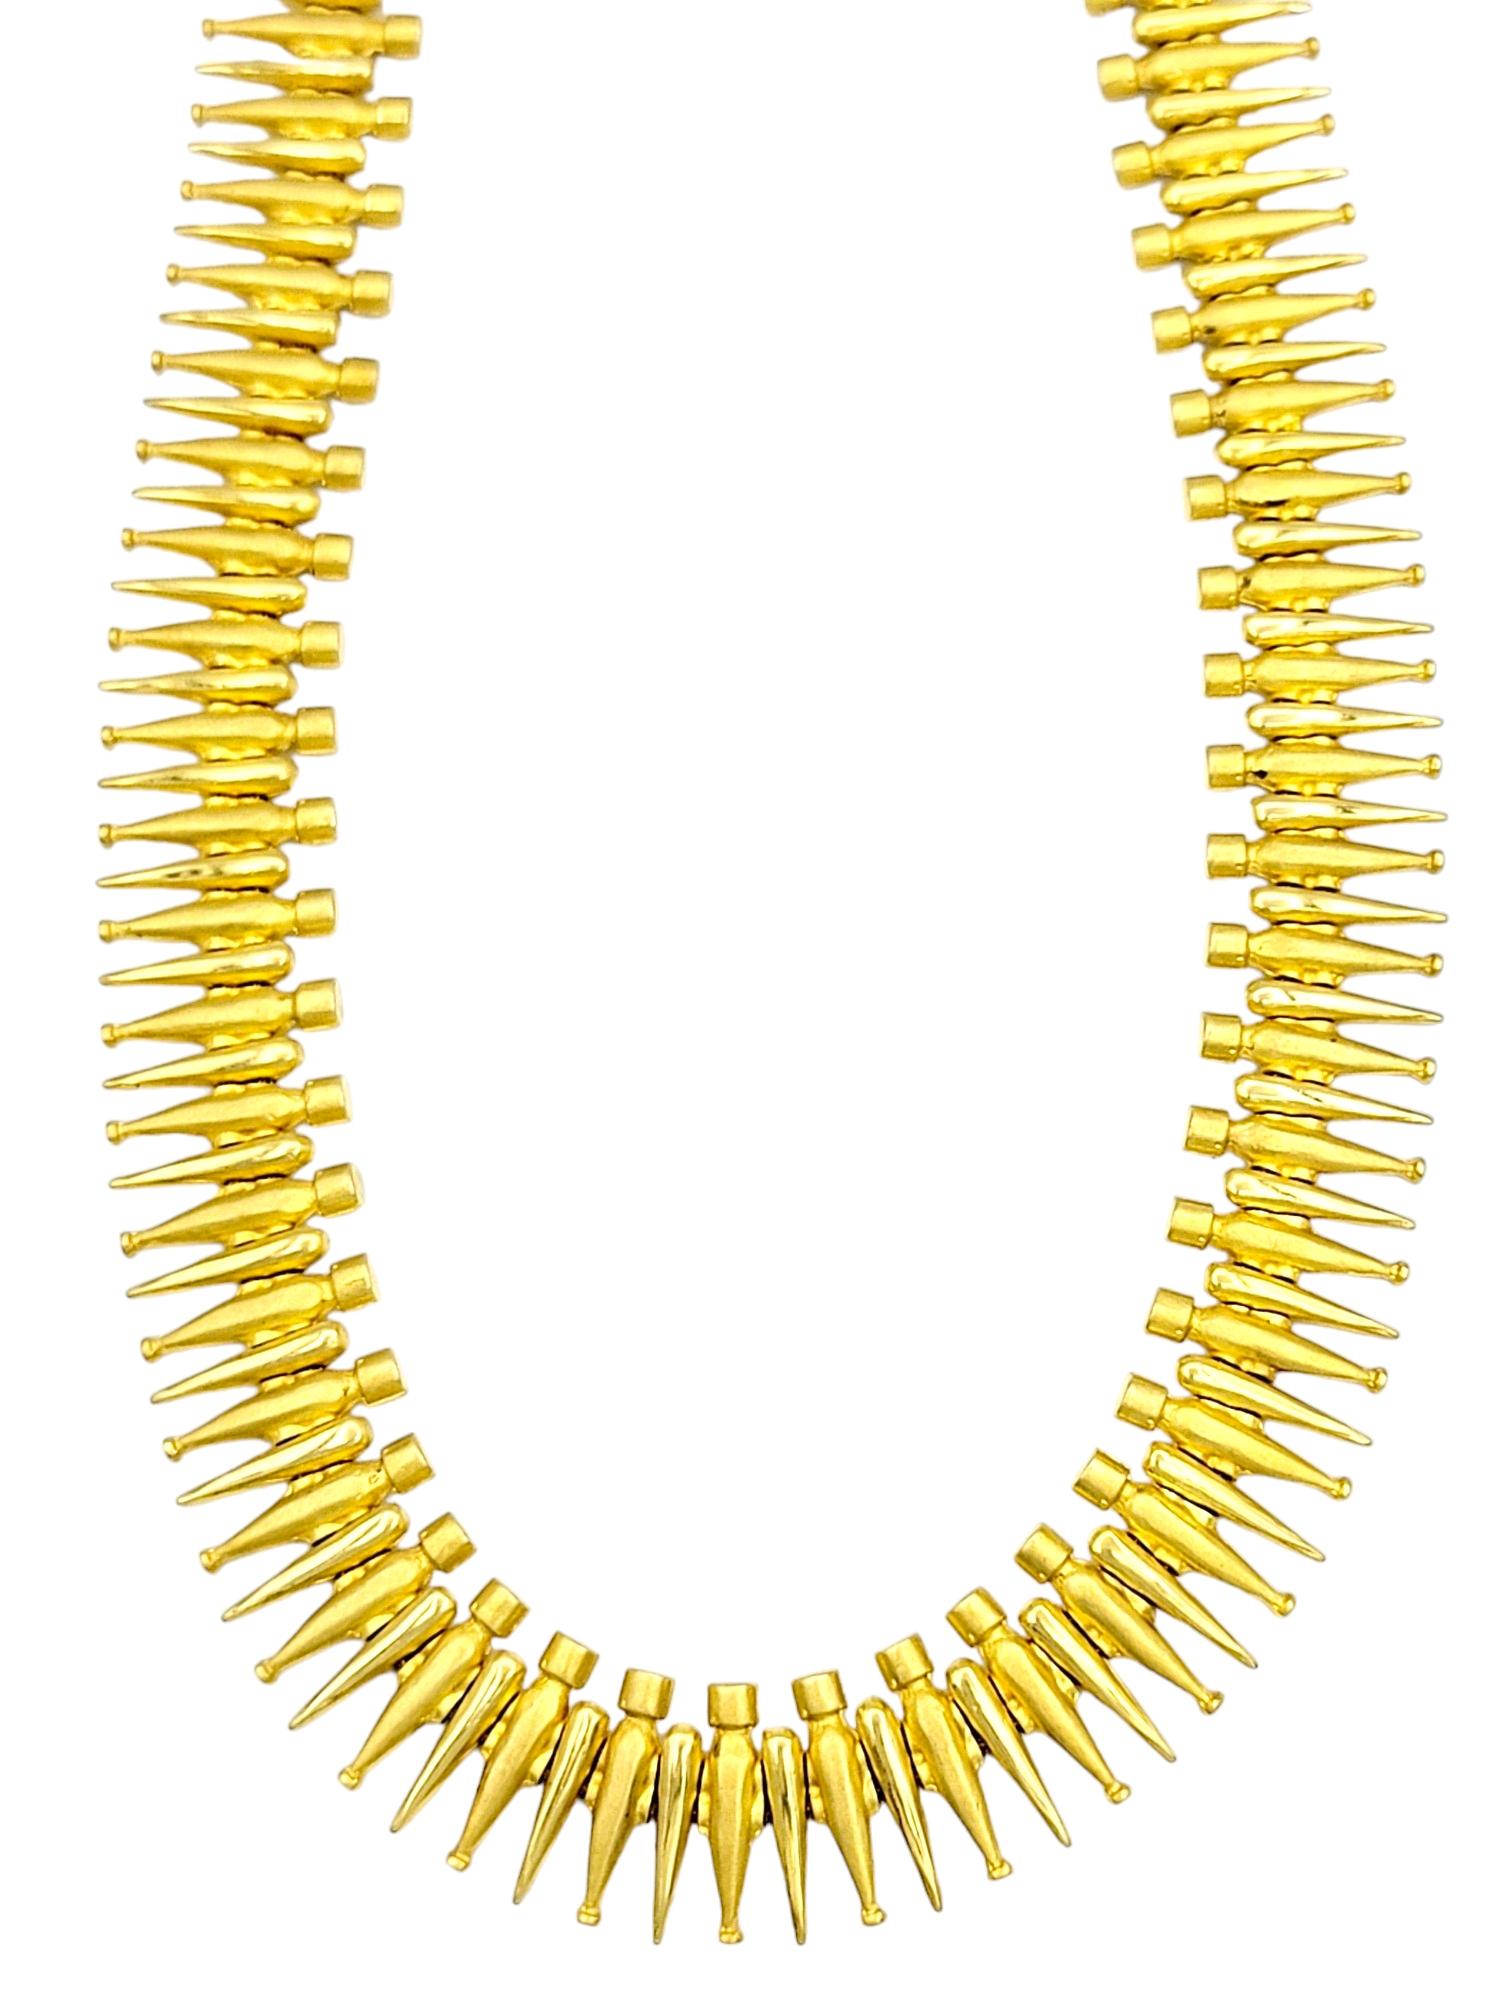 Diese exquisite Halskette aus 18 Karat Gelbgold strahlt zeitlose Raffinesse aus. Das schmale Gliederdesign geht nahtlos in gebürstete und polierte Goldglieder über und schafft so einen auffälligen Kontrast, der das Licht bei jeder Bewegung einfängt